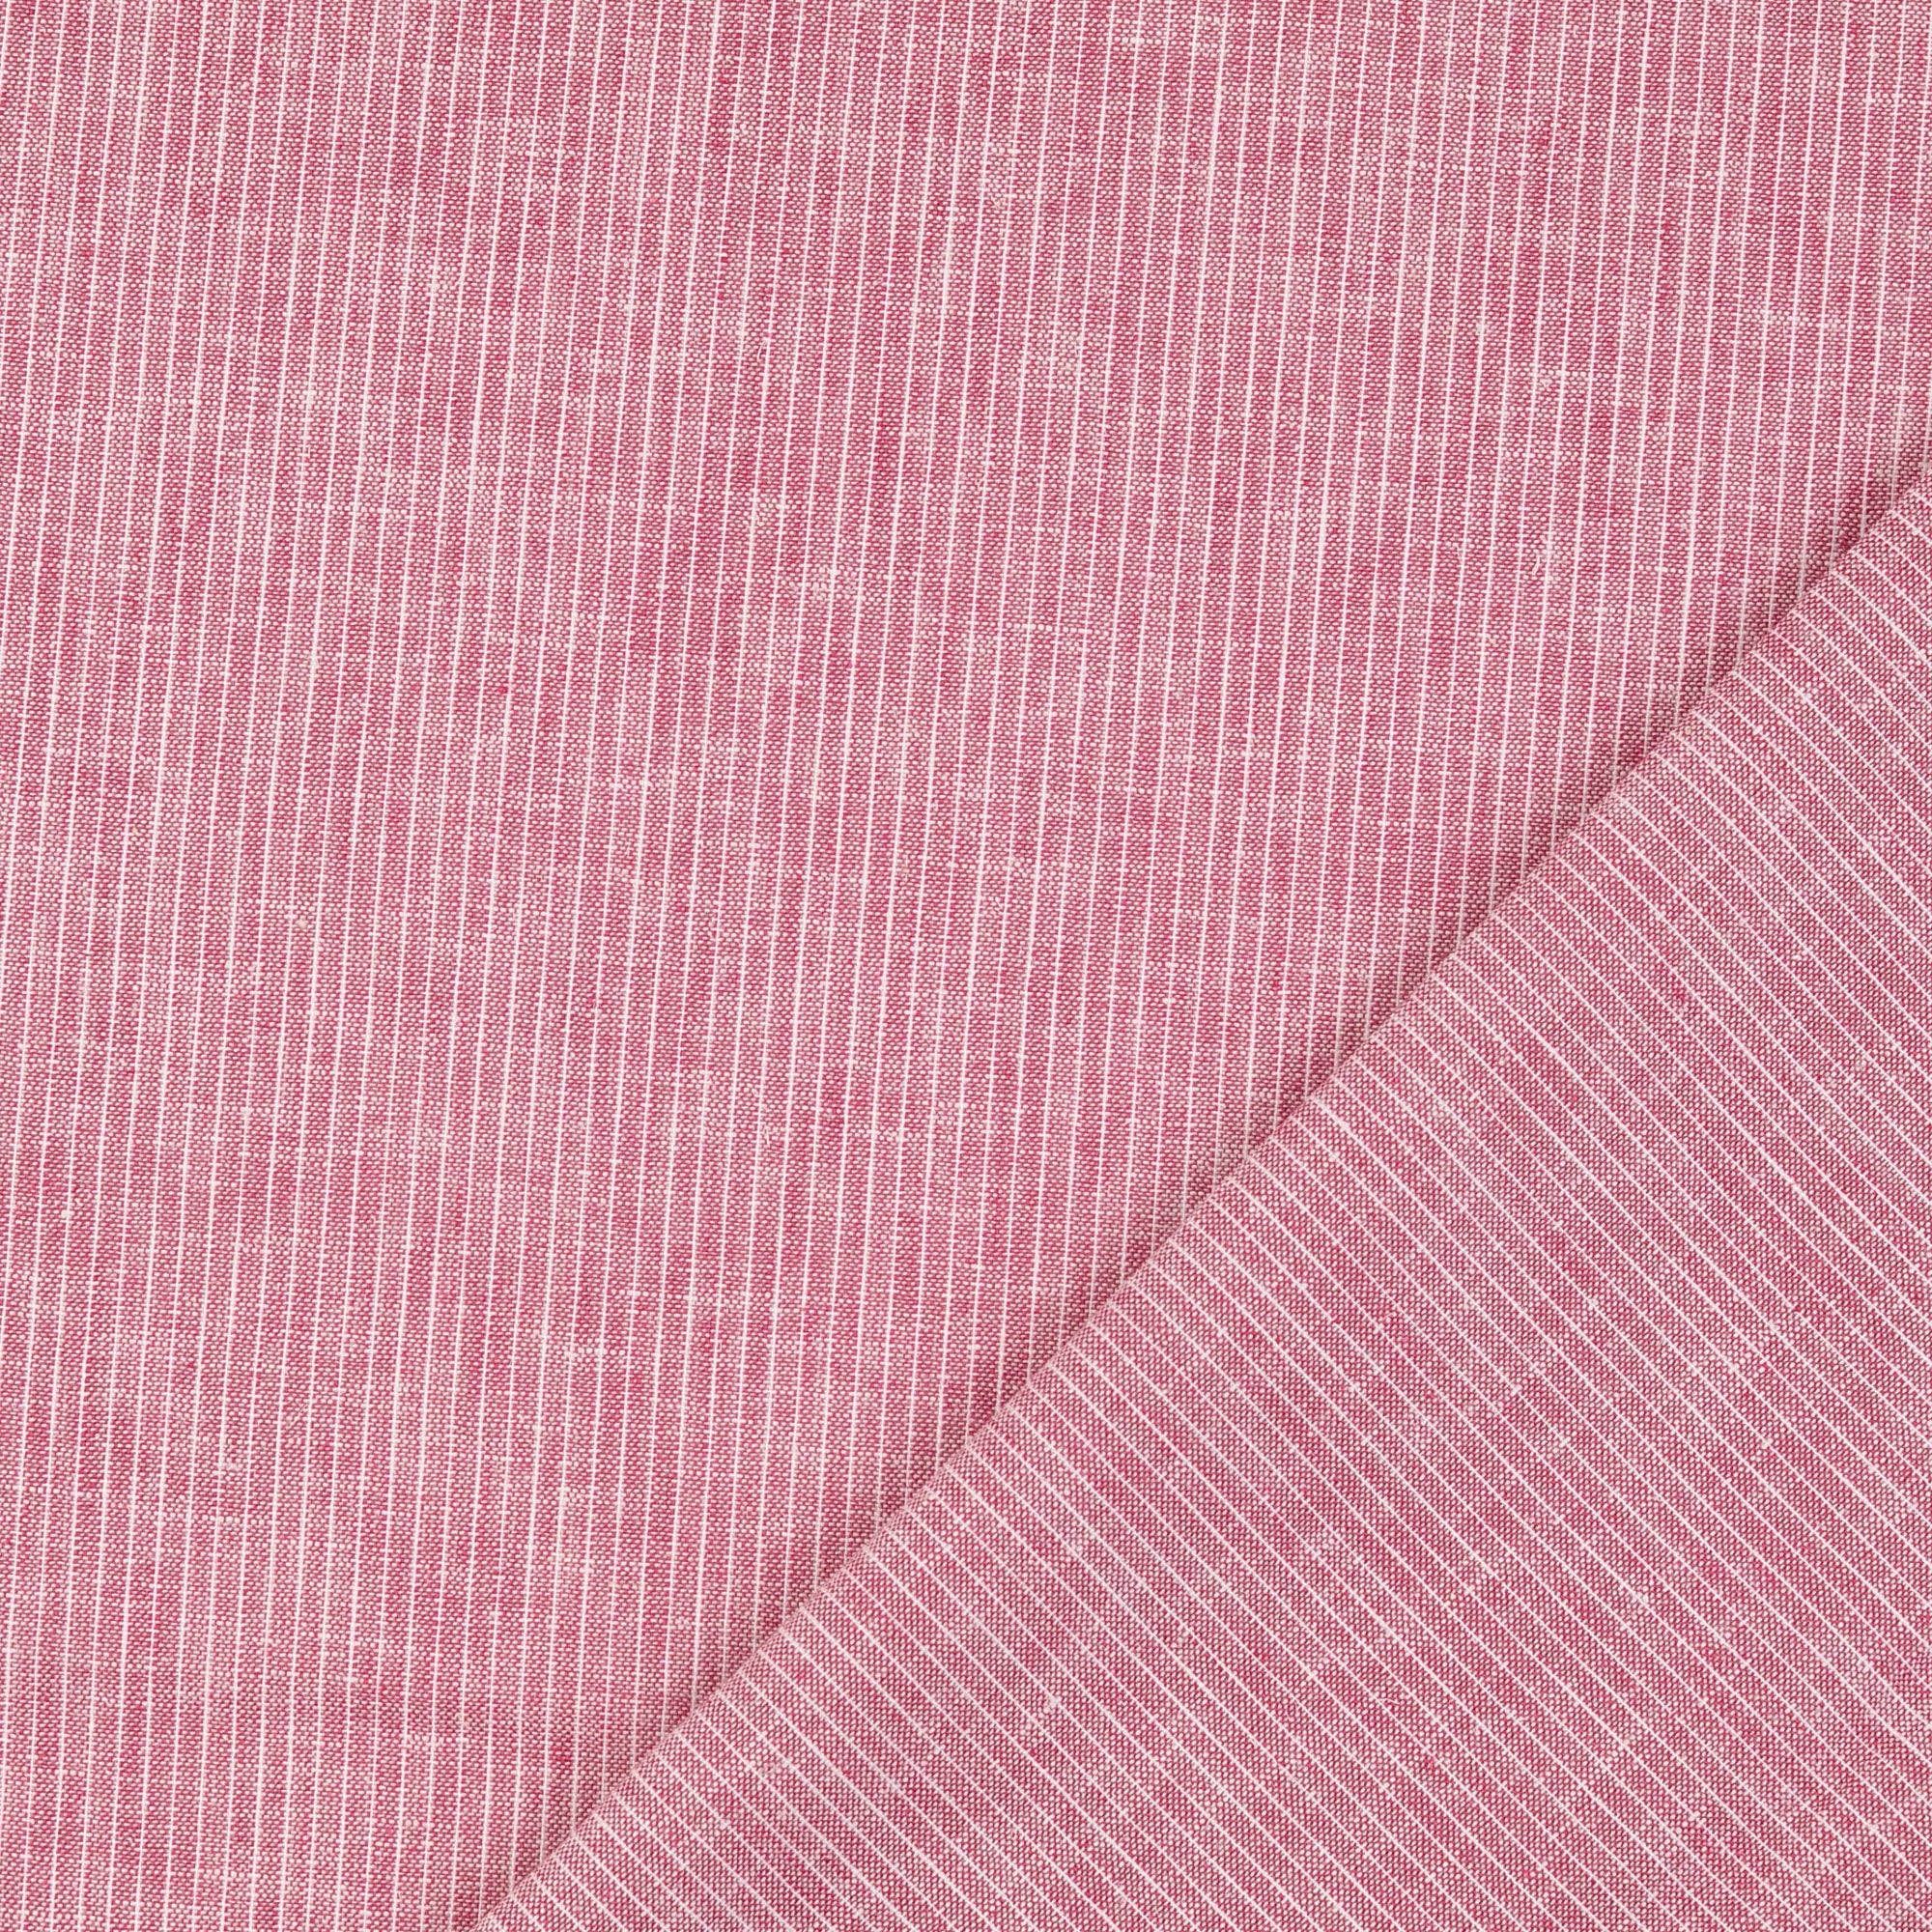 Fine Stripe Red Linen Cotton Fabric